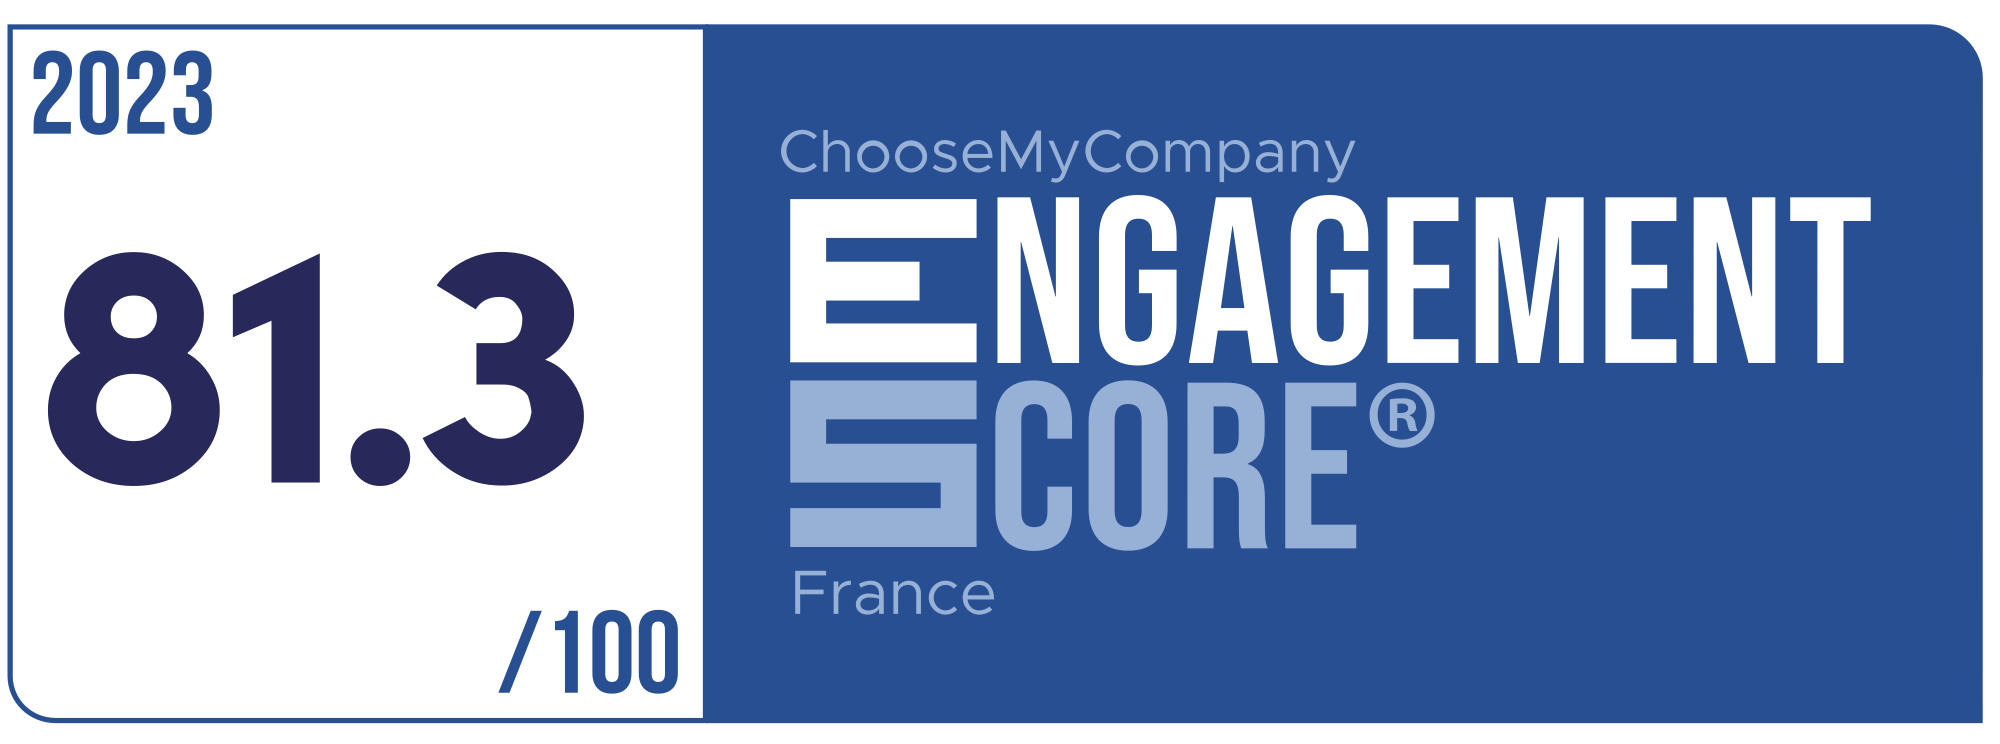 Label Engagement Score 2023 France